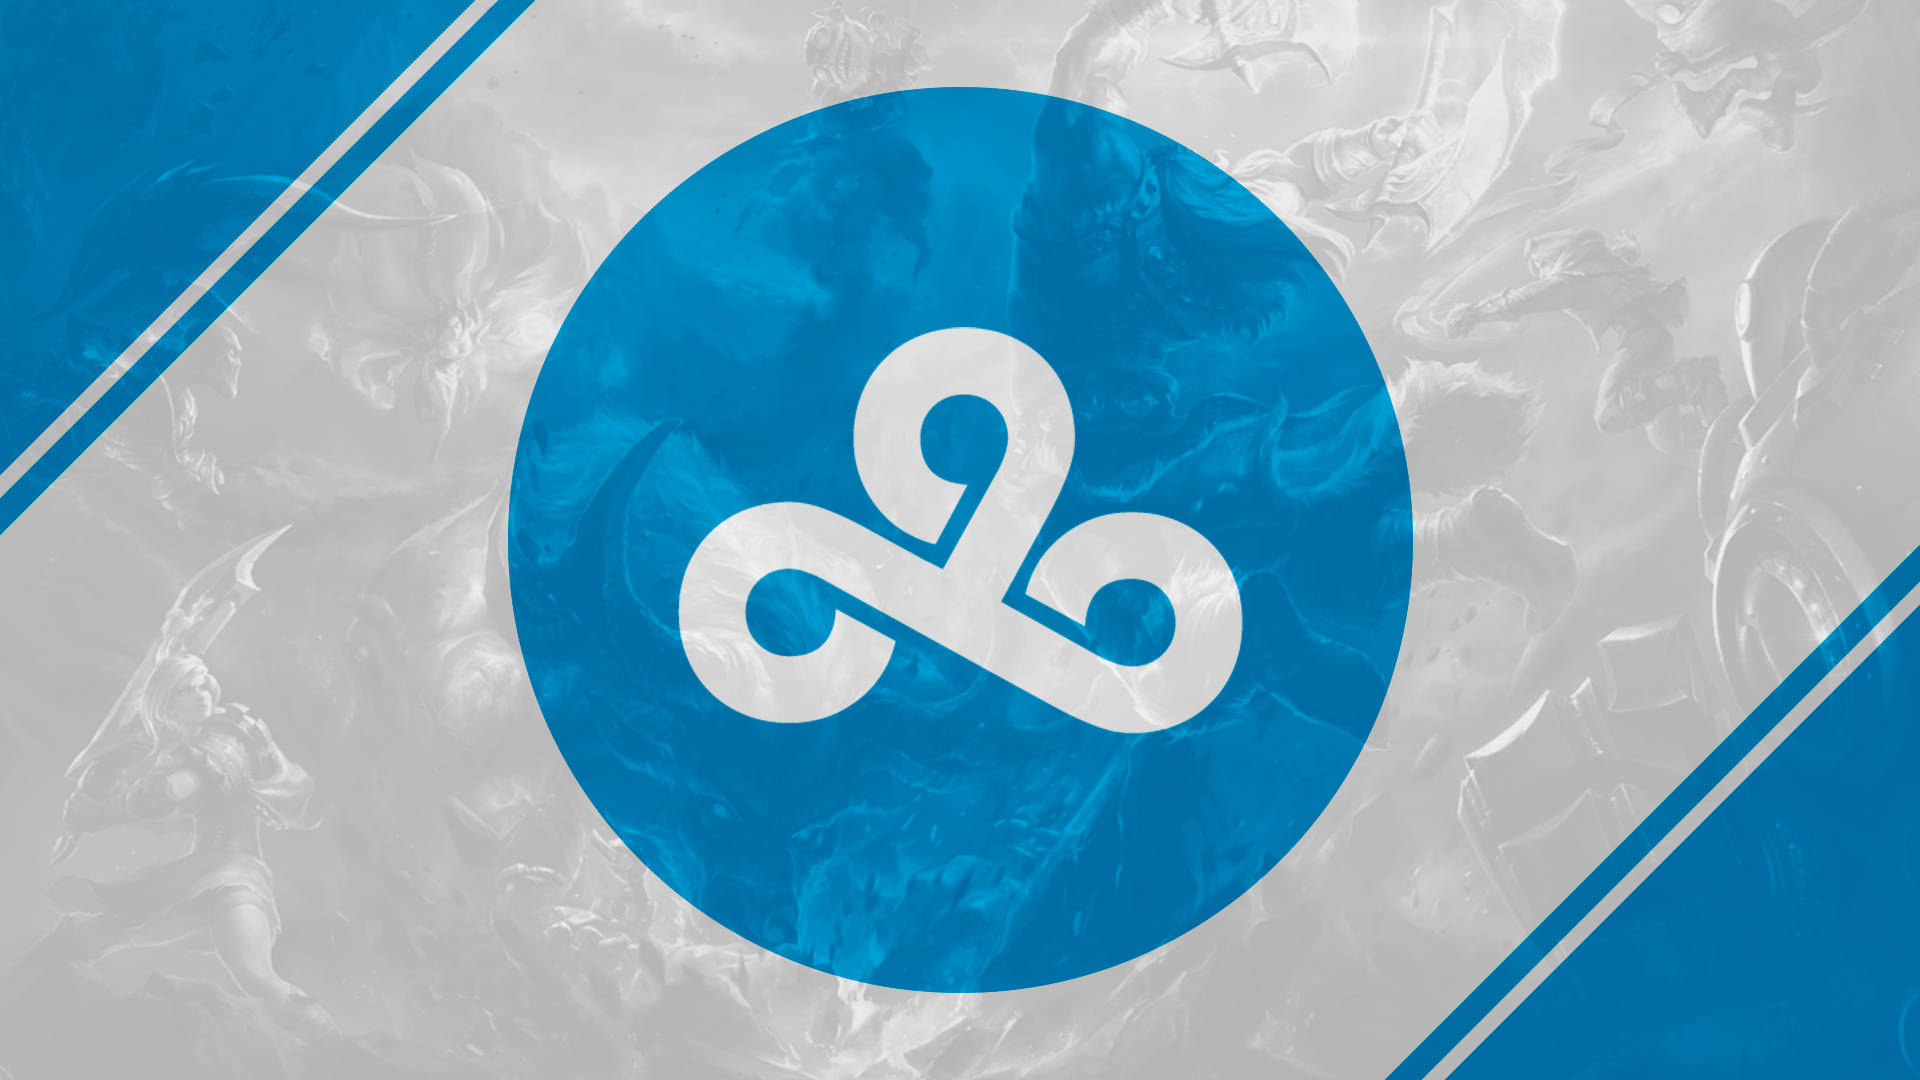 Logotipode Cloud9 En Una Esfera Translúcida Azul. Fondo de pantalla